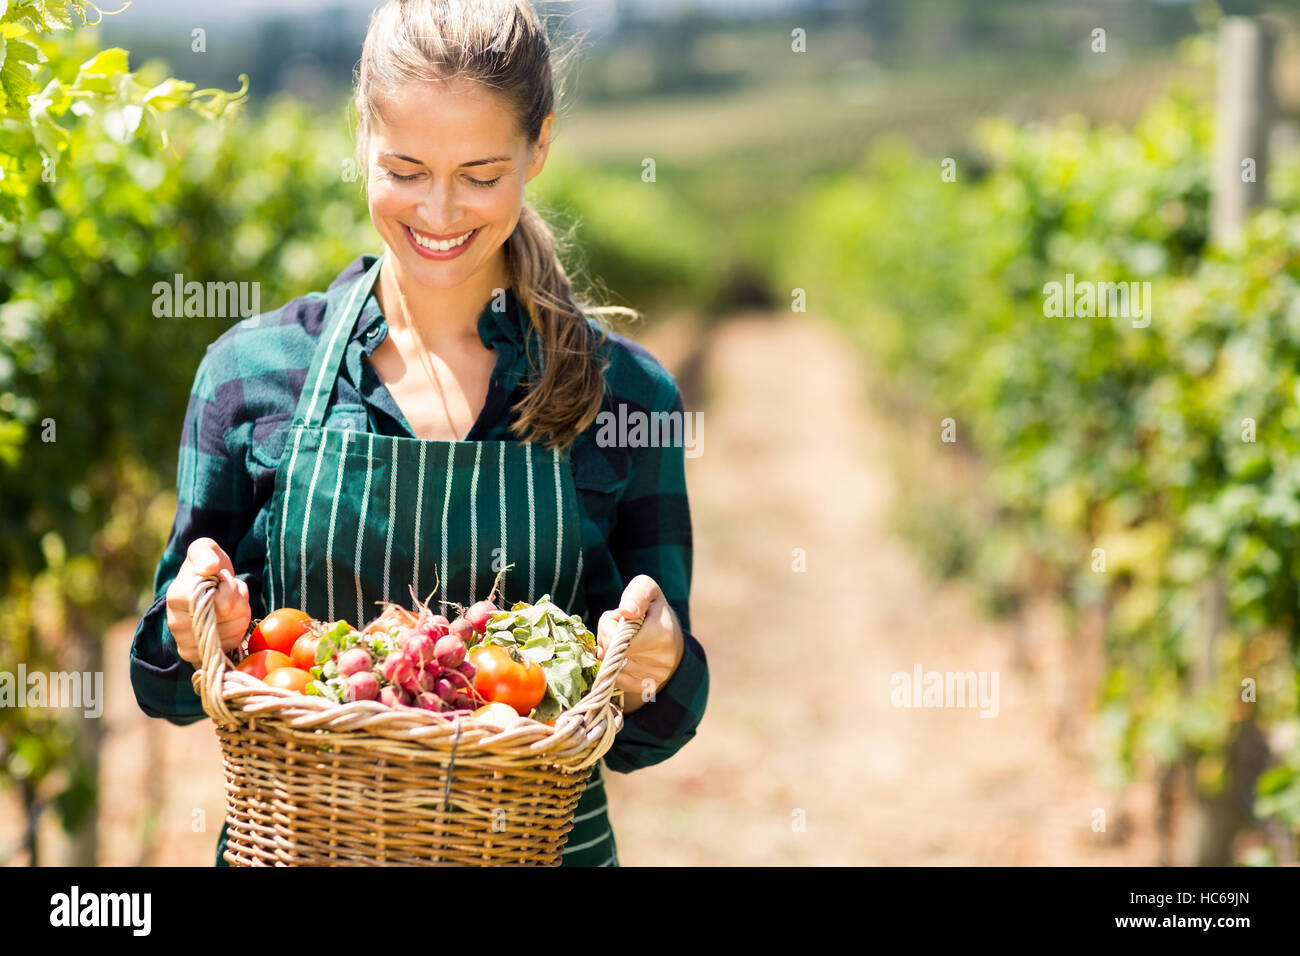 Glücklich Bäuerin hält einen Korb mit Gemüse Stockfoto